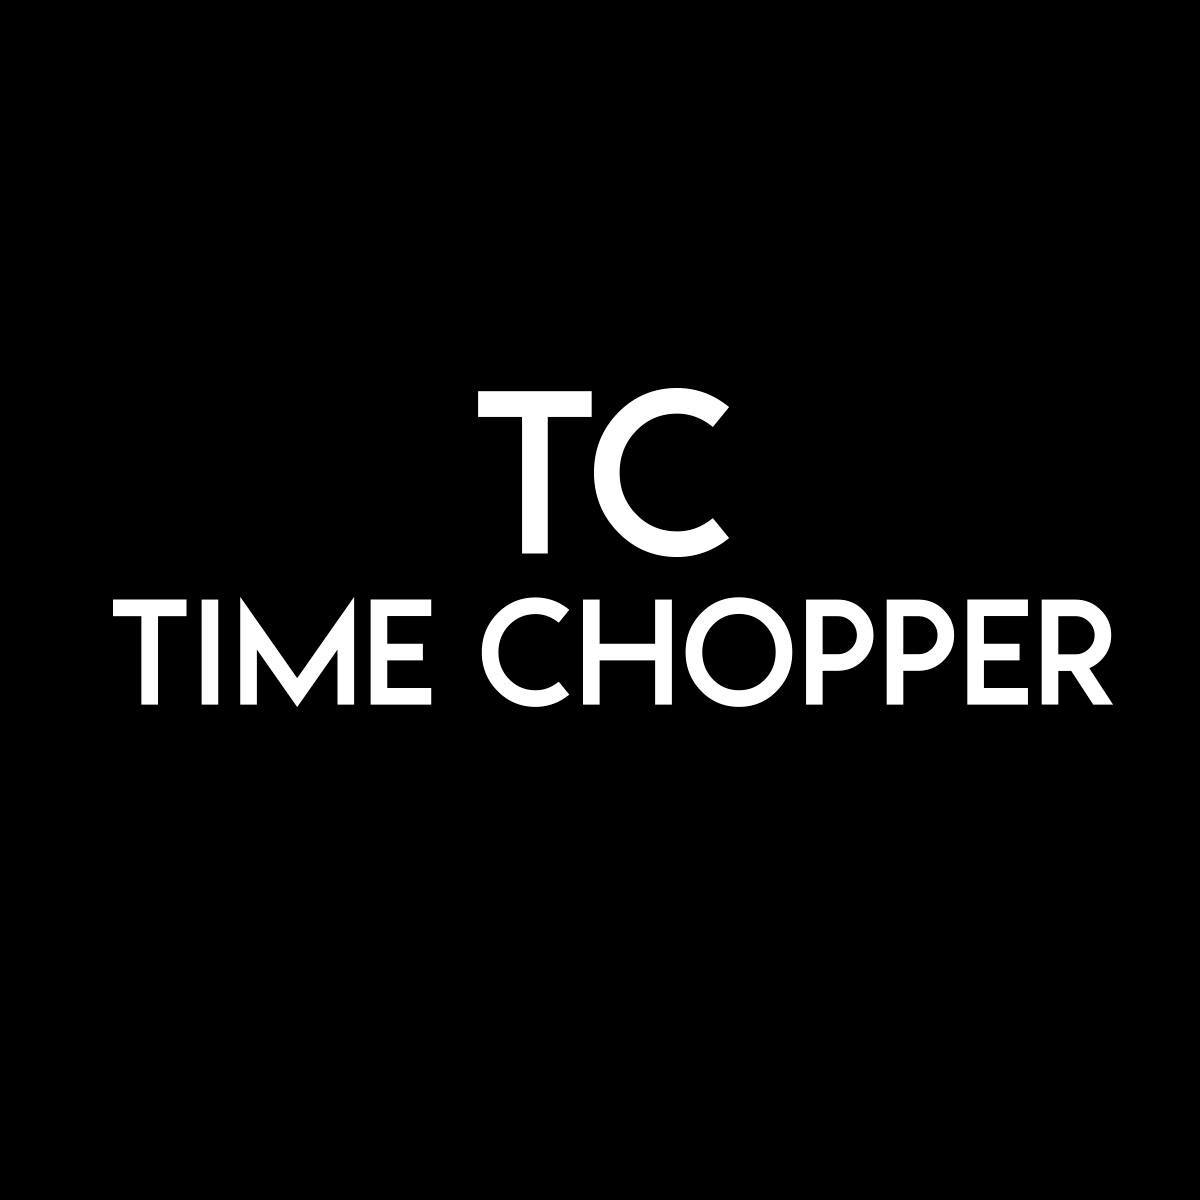   Time Chopper